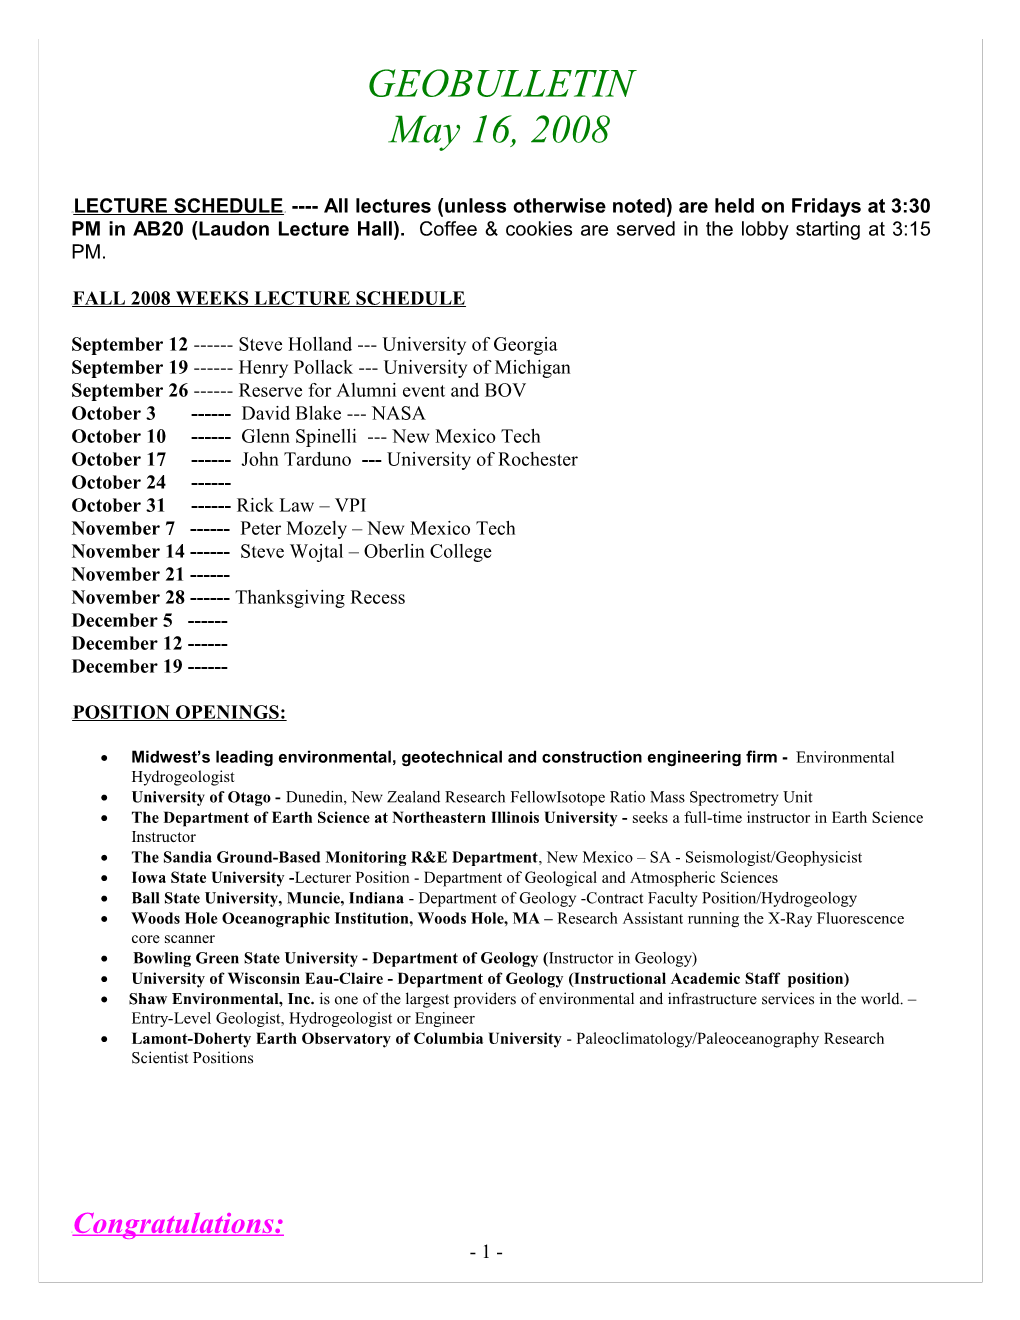 U Fall 2008 Weeks Lecture Schedule